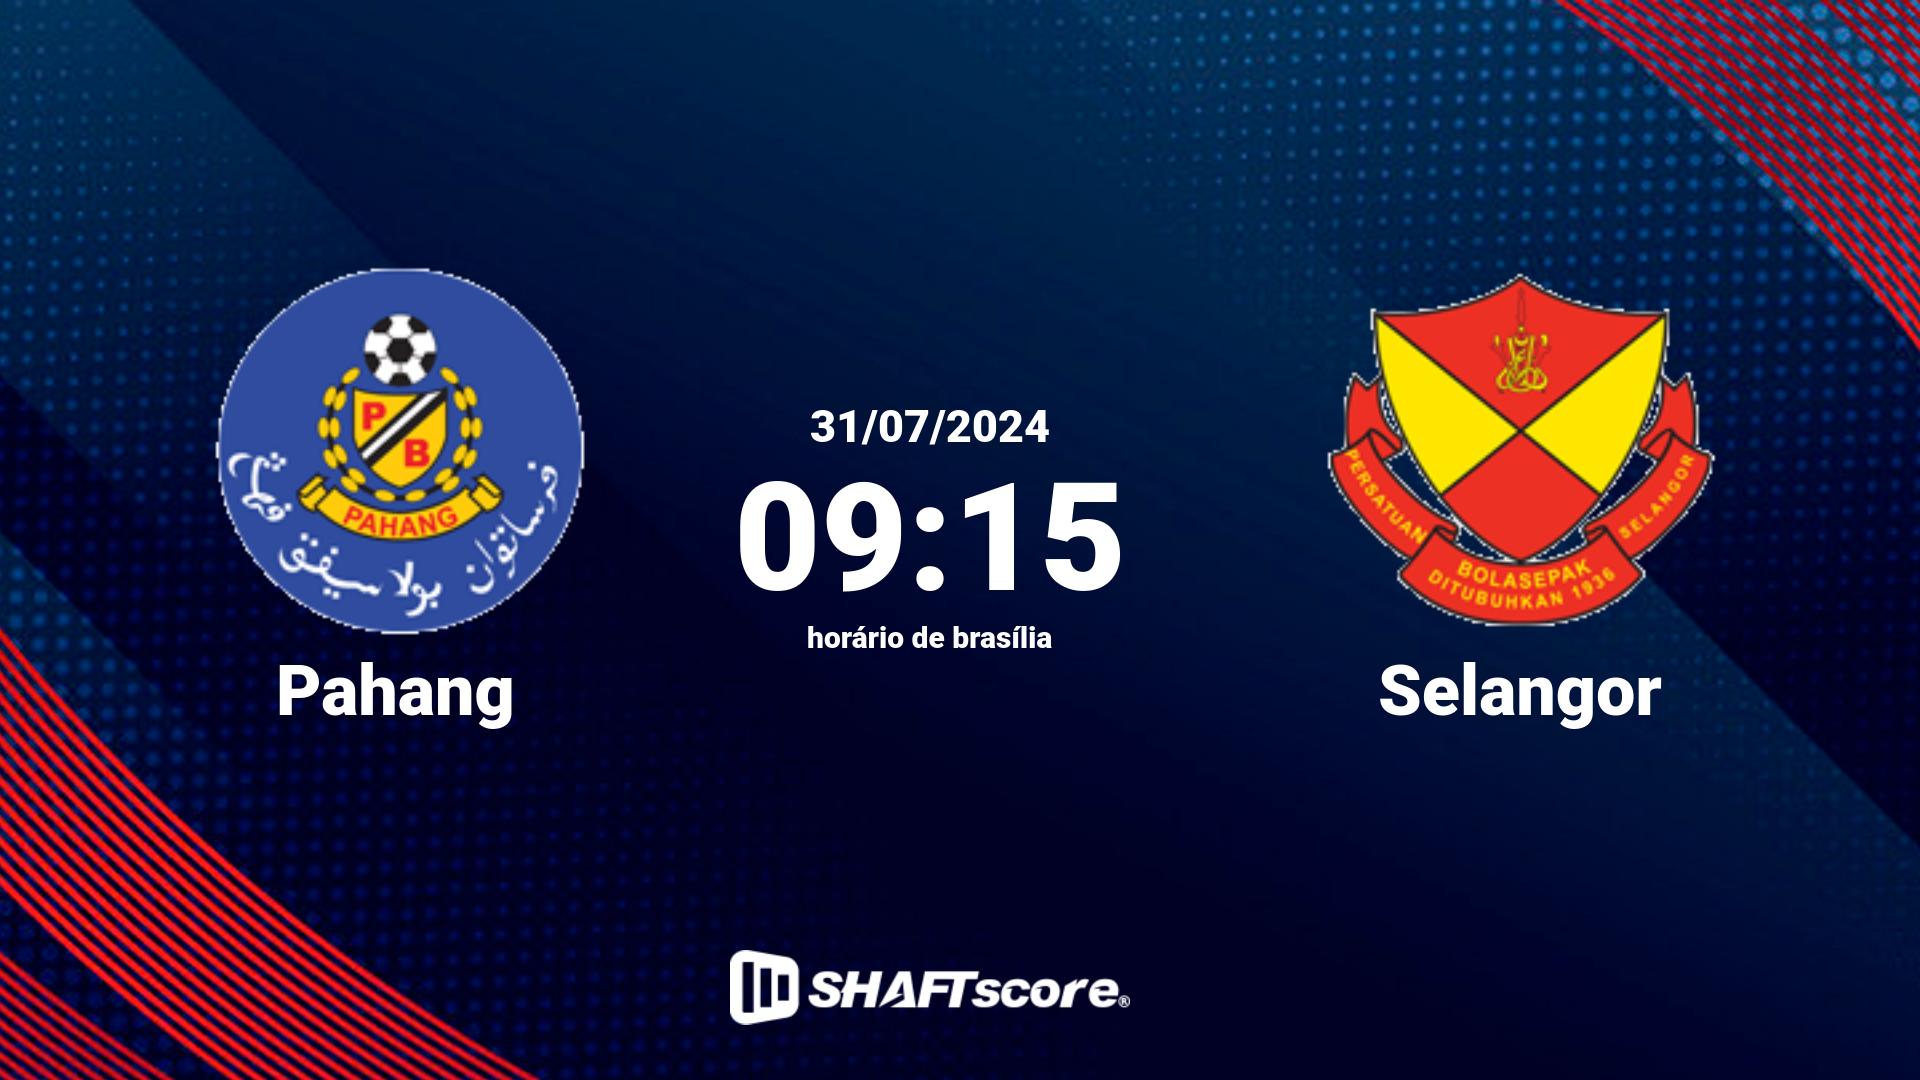 Estatísticas do jogo Pahang vs Selangor 31.07 09:15